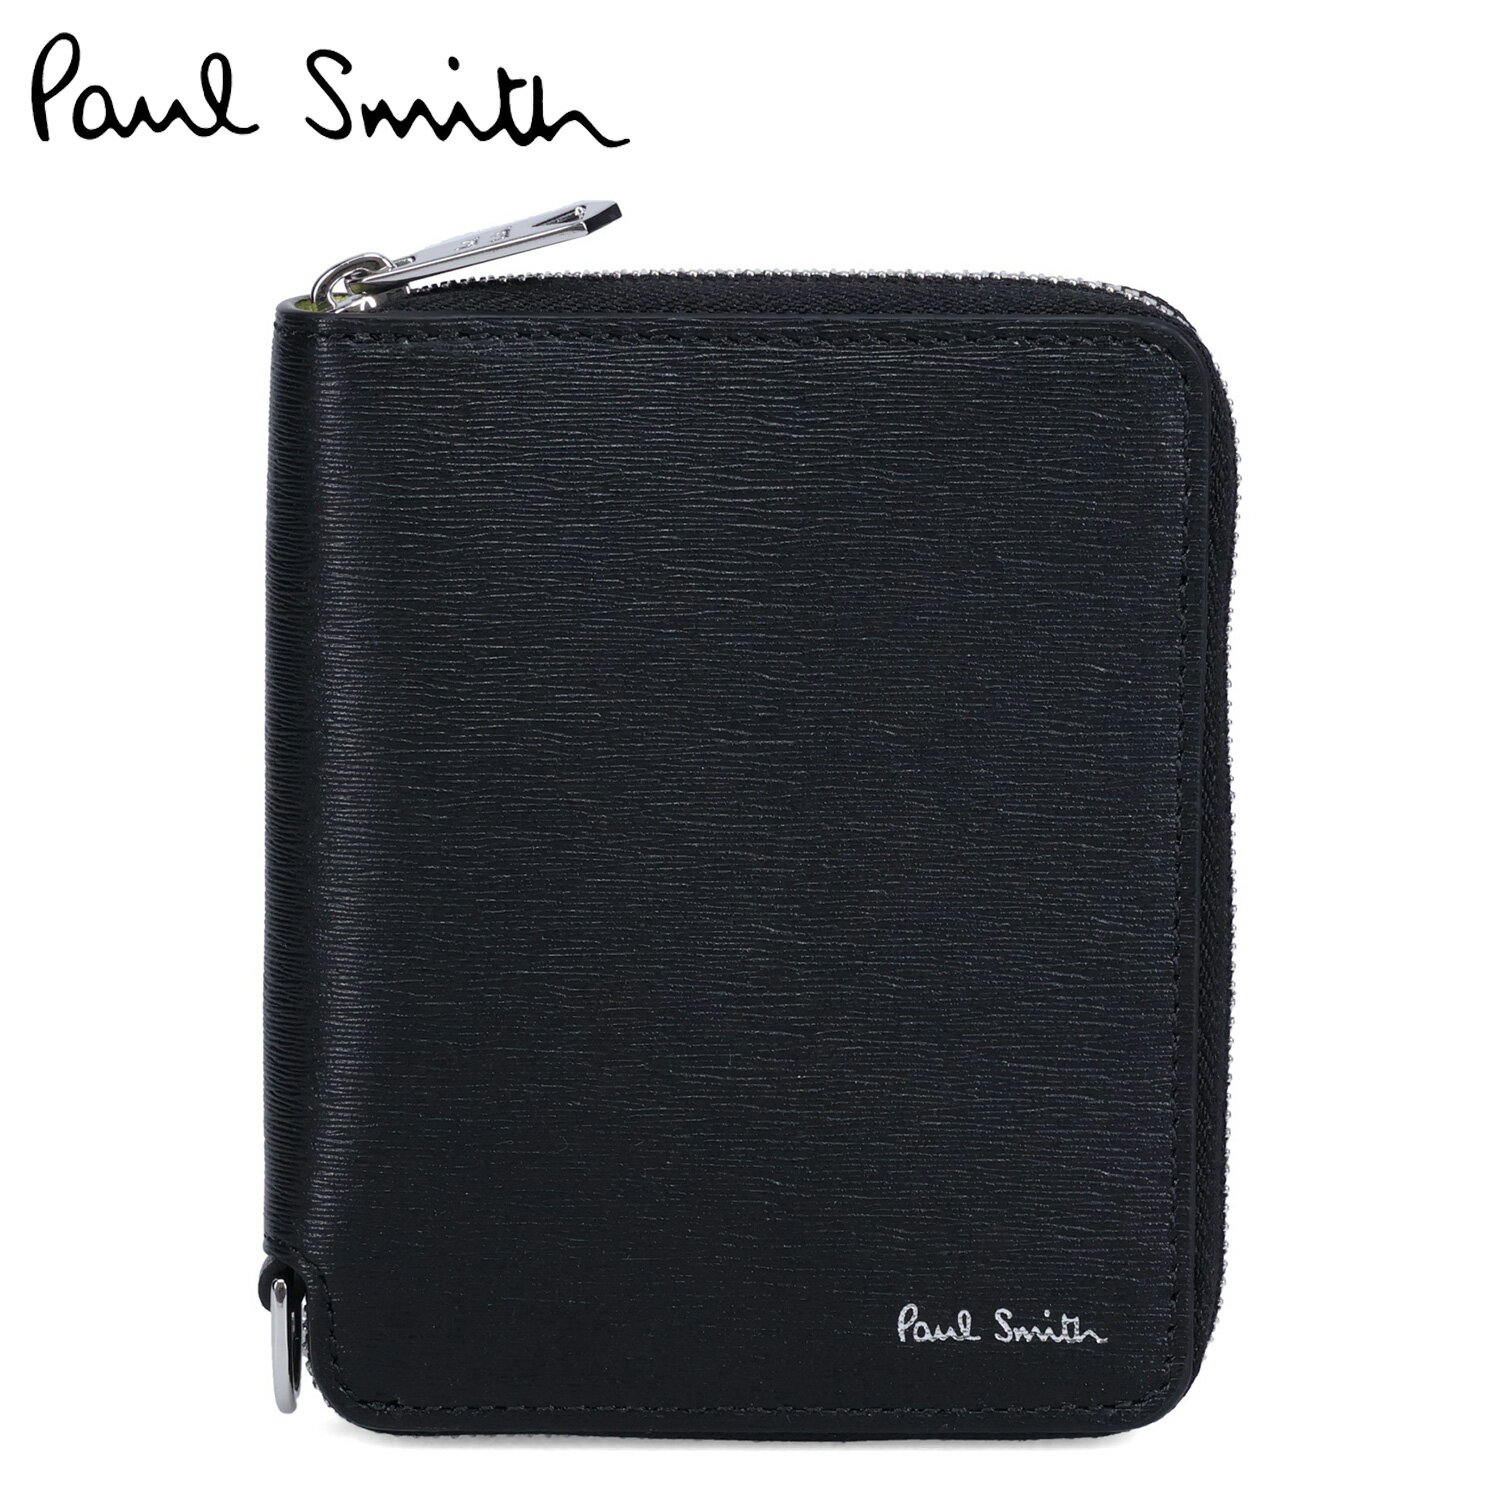 ポール・スミス 二つ折り財布（メンズ） Paul Smith WALLET ZIP BFOLD ポールスミス 財布 二つ折り財布 メンズ 本革 ラウンドファスナー ブラック 黒 M1A-6702-KSTRGS